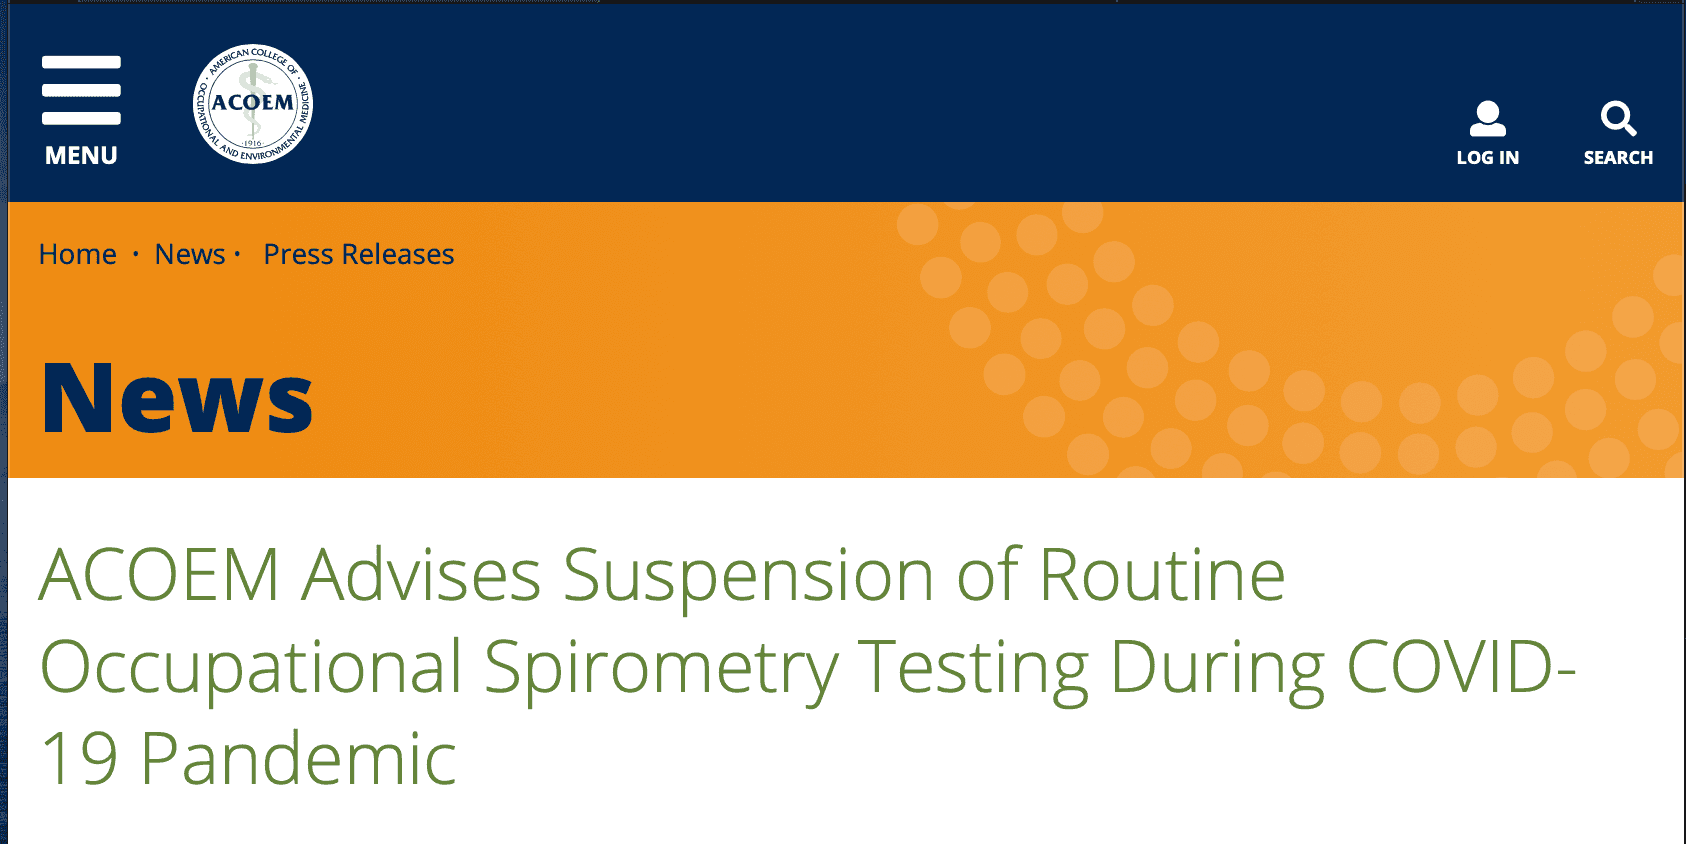 คำแนะนำให้ระงับการทำ Routine Occupational Spirometry testing ระหว่างช่วงการระบาด COVID-19